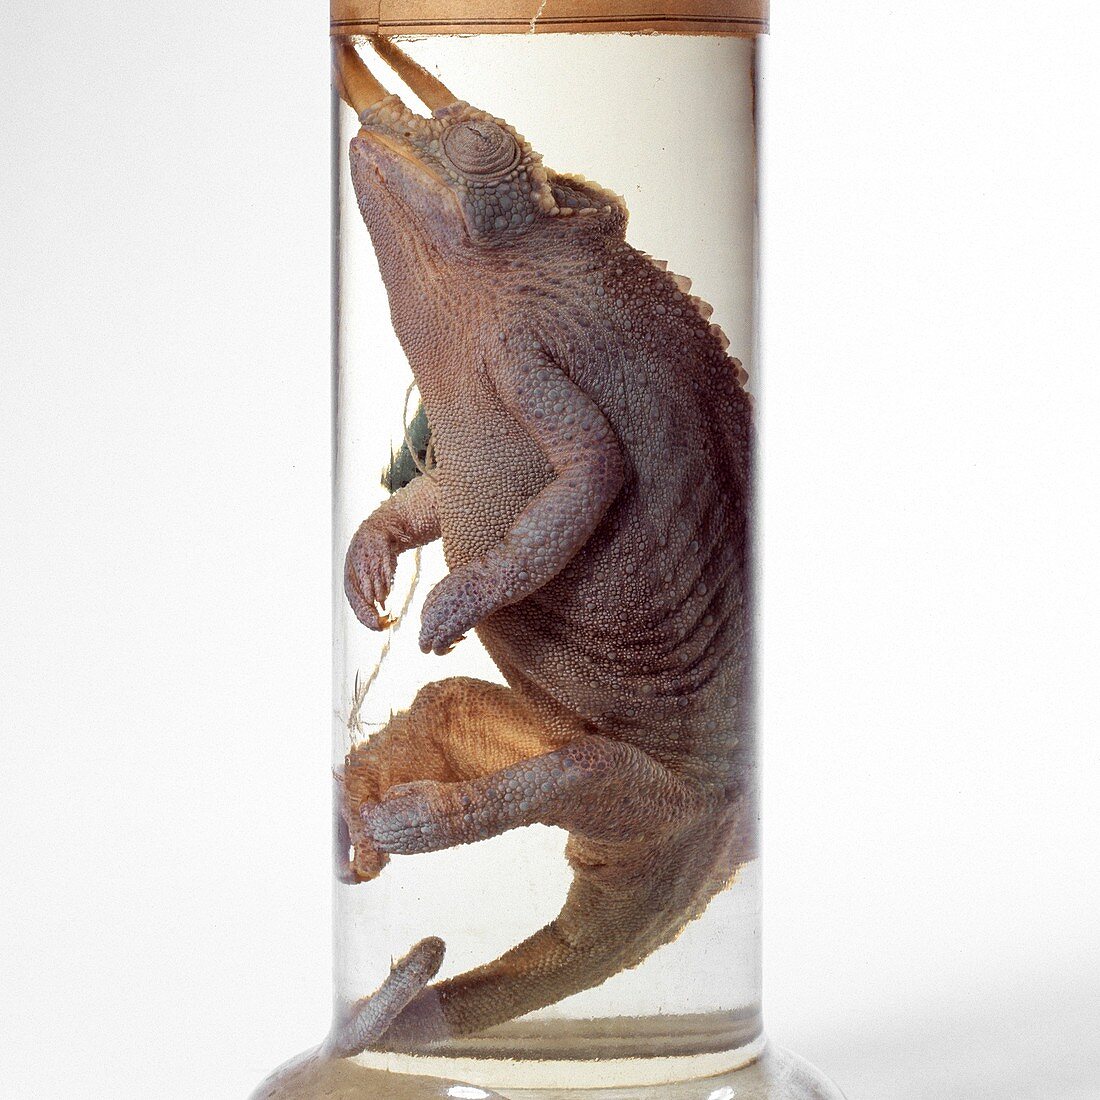 Jackson's chameleon specimen